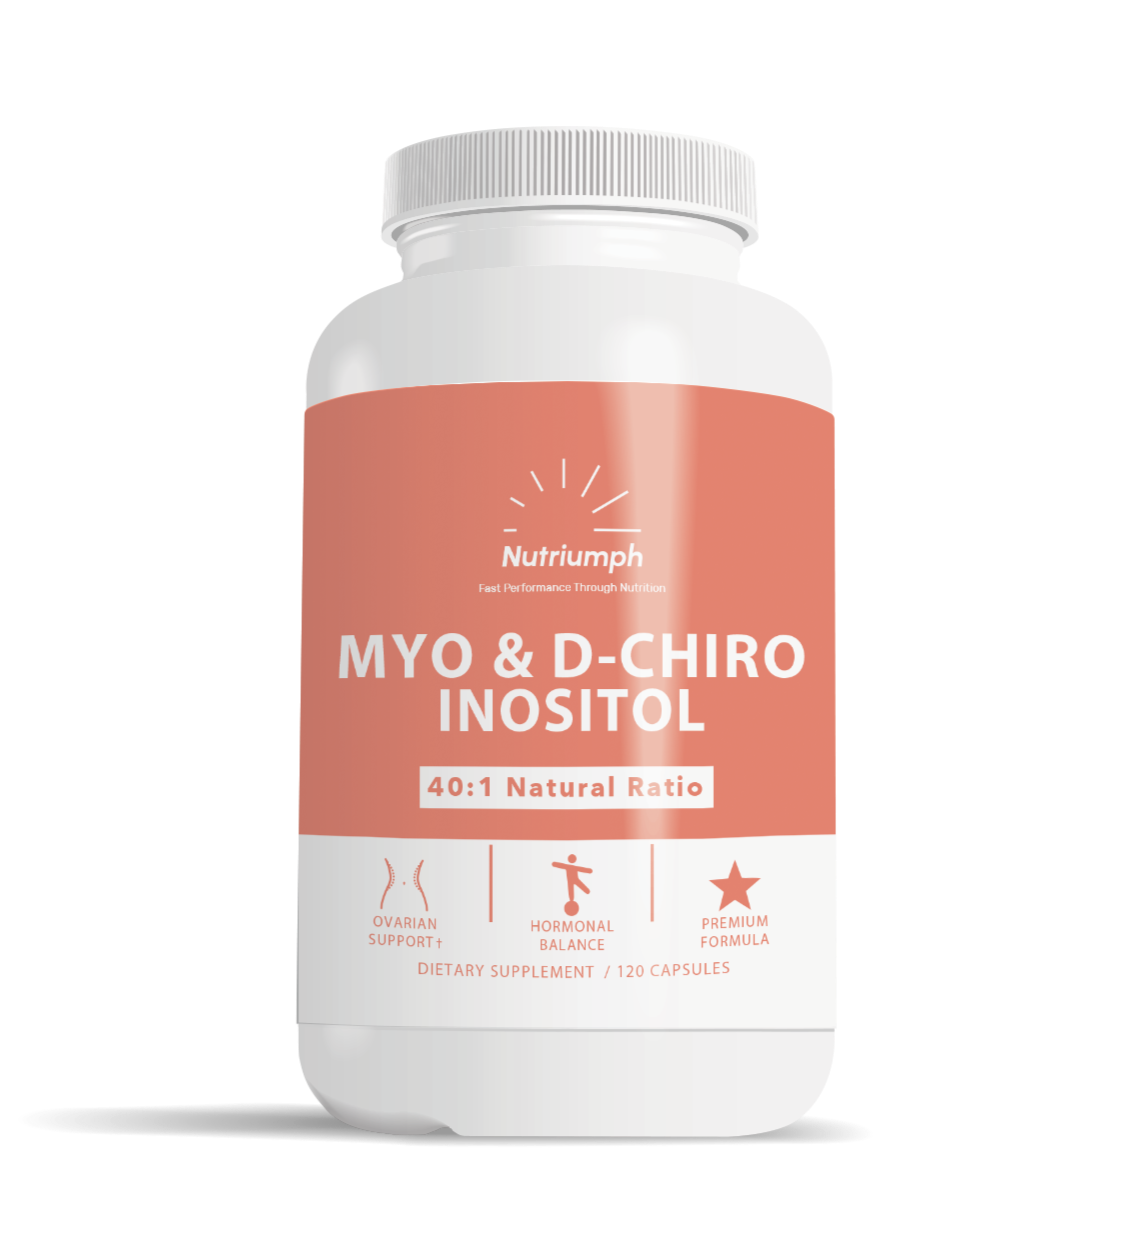 MYO-INOSITOL + D-CHIRO INOSITOL - Hormonal & Ovarian Support